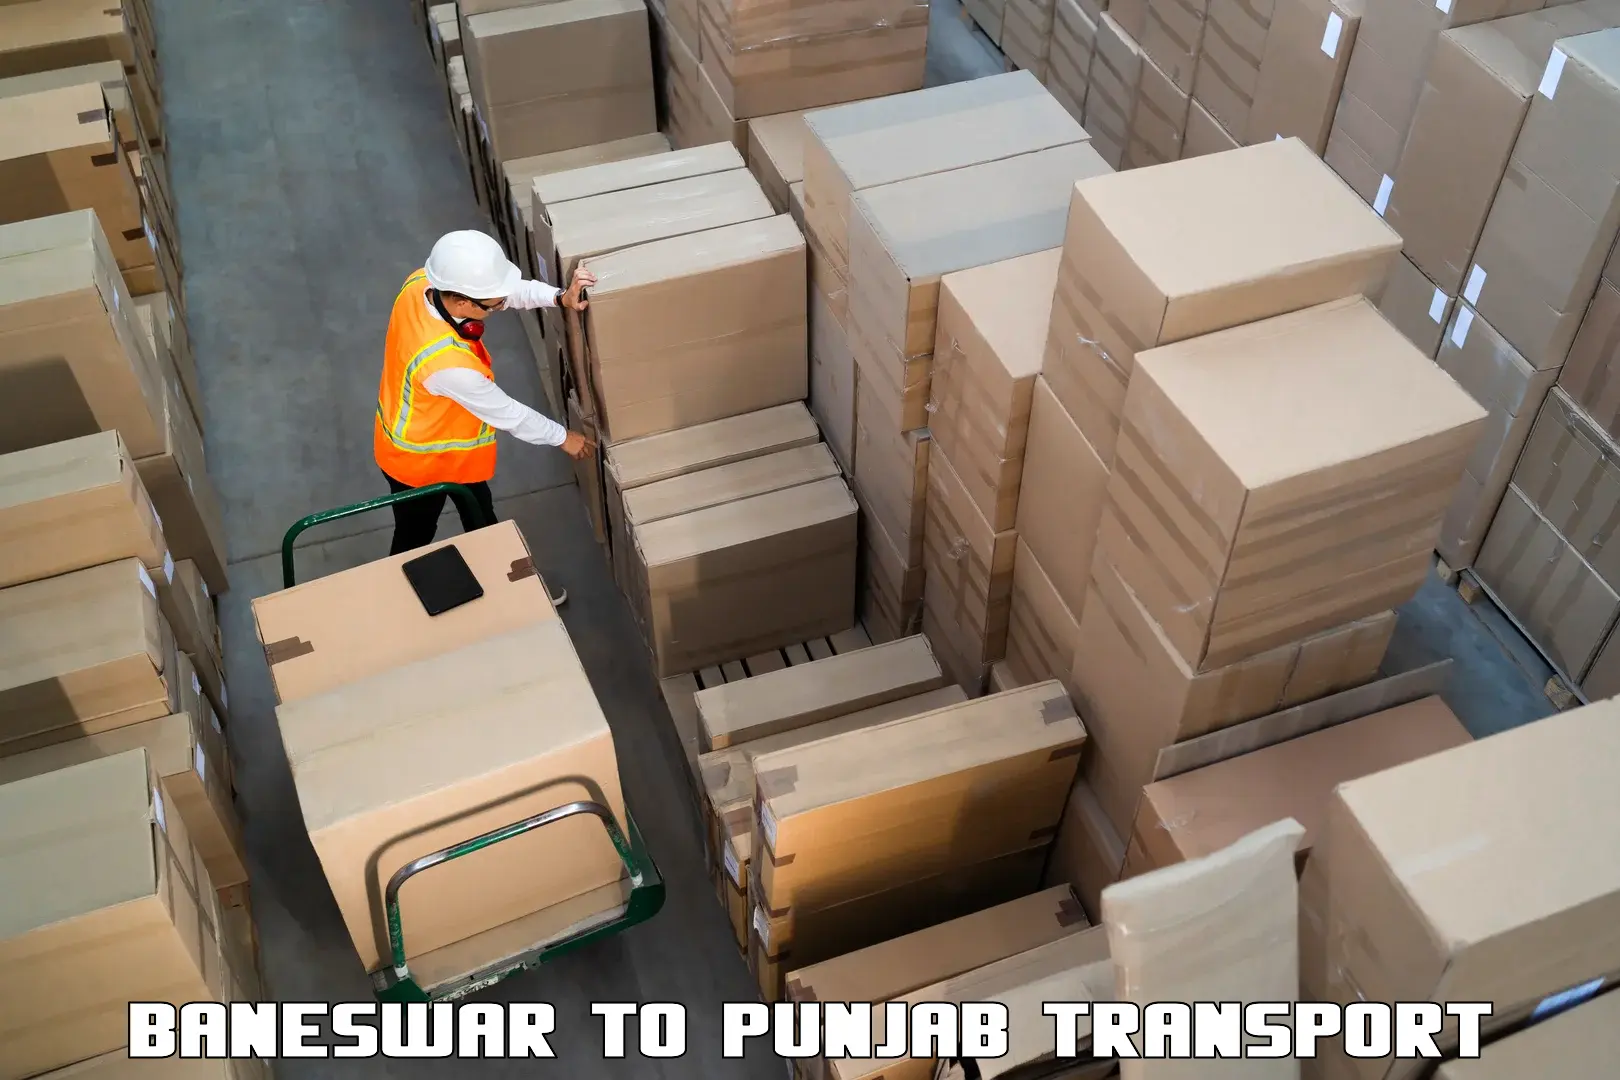 Luggage transport services Baneswar to Punjab